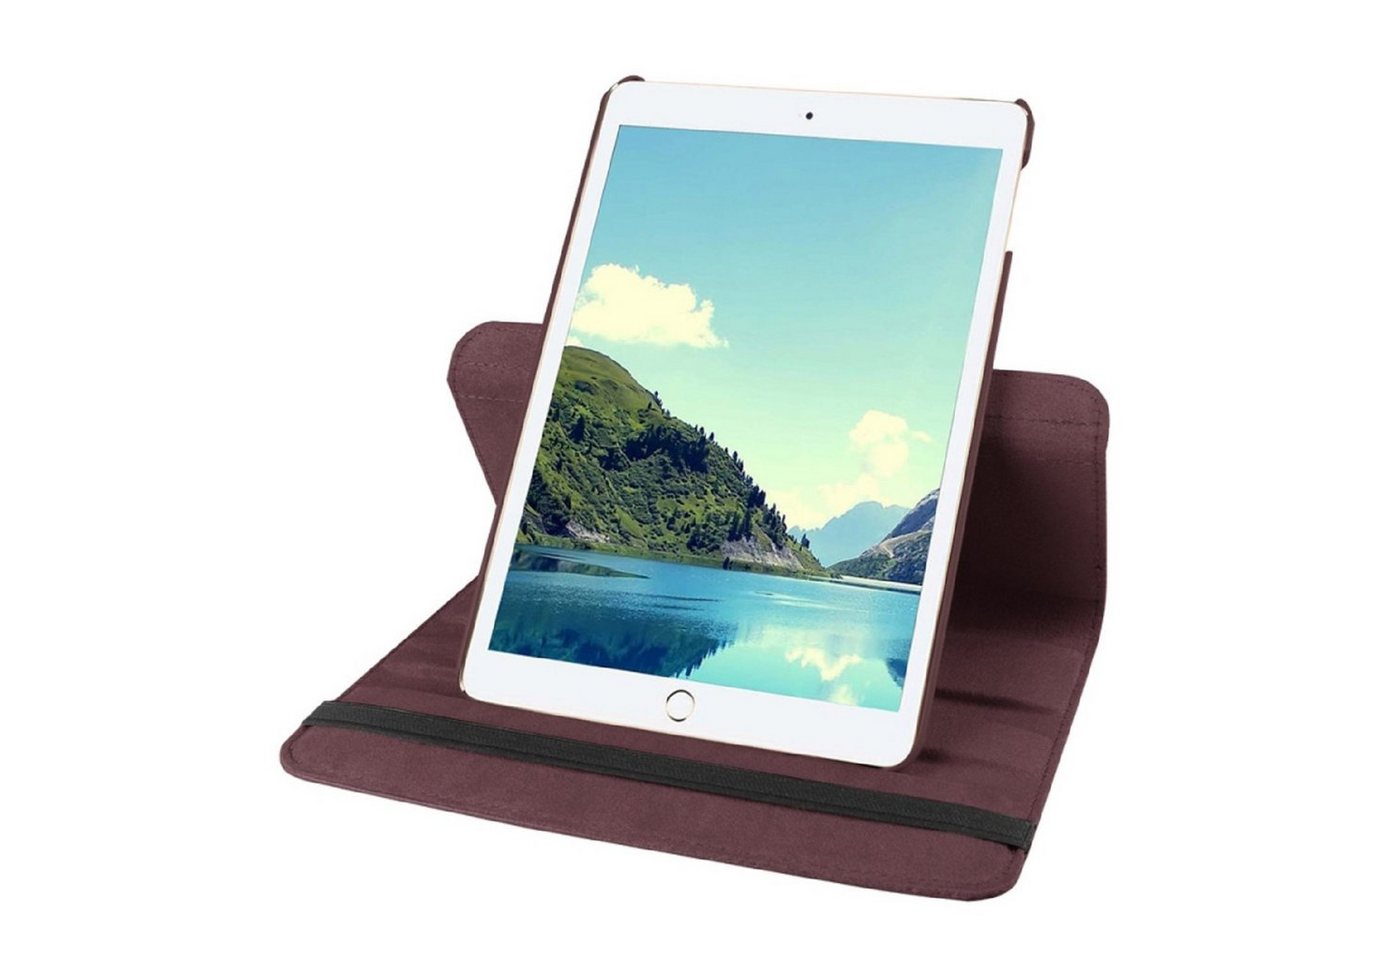 Protectorking Tablet-Hülle Schutzhülle für iPad Mini 4/5/6 Tablet Hülle Schutz Tasche Case Cover 7,9 Zoll, Tablet Schutzhülle mit Wakeup/Sleep - Funktion, 360° Drehbar von Protectorking